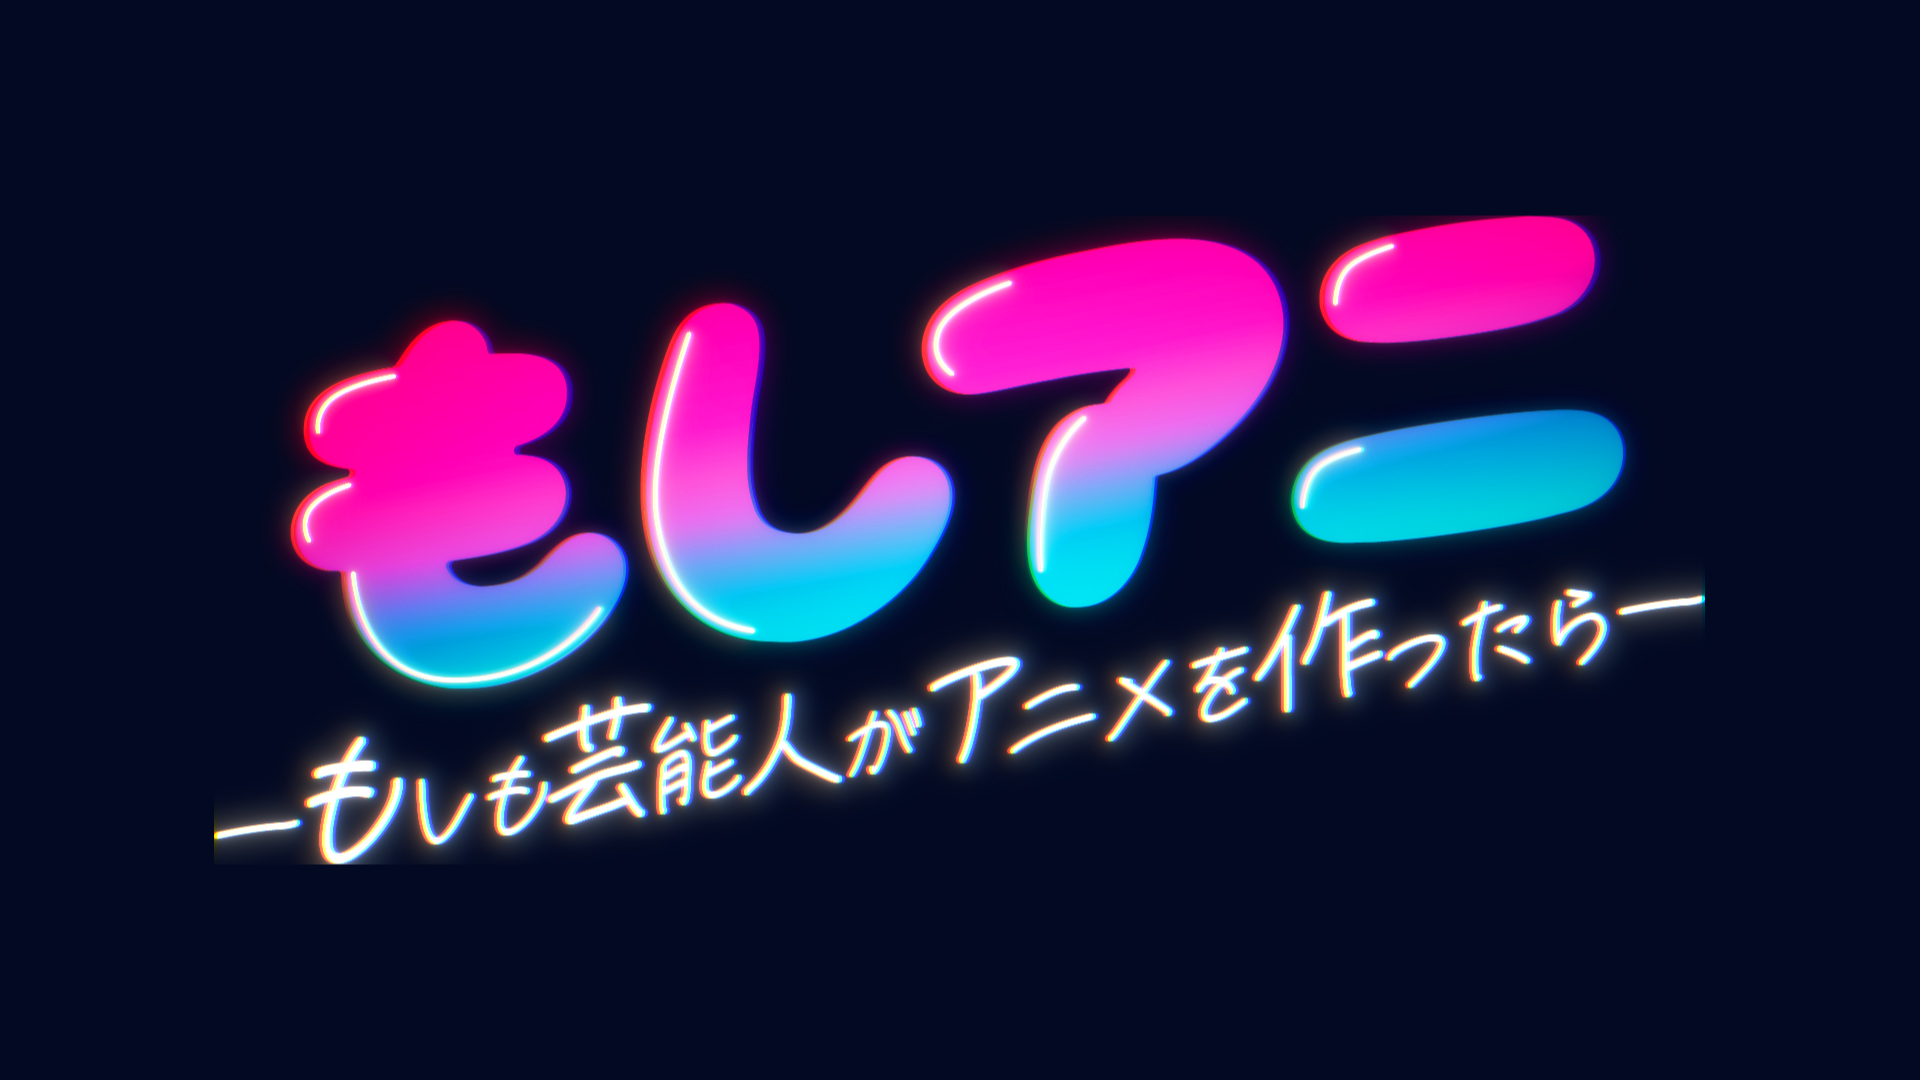 テレビ朝日 芸能人 人気アニメーターのnftショートアニメを限定販売 地上波番組との連動企画 12月30日深夜1時分から放送 Gamebiz